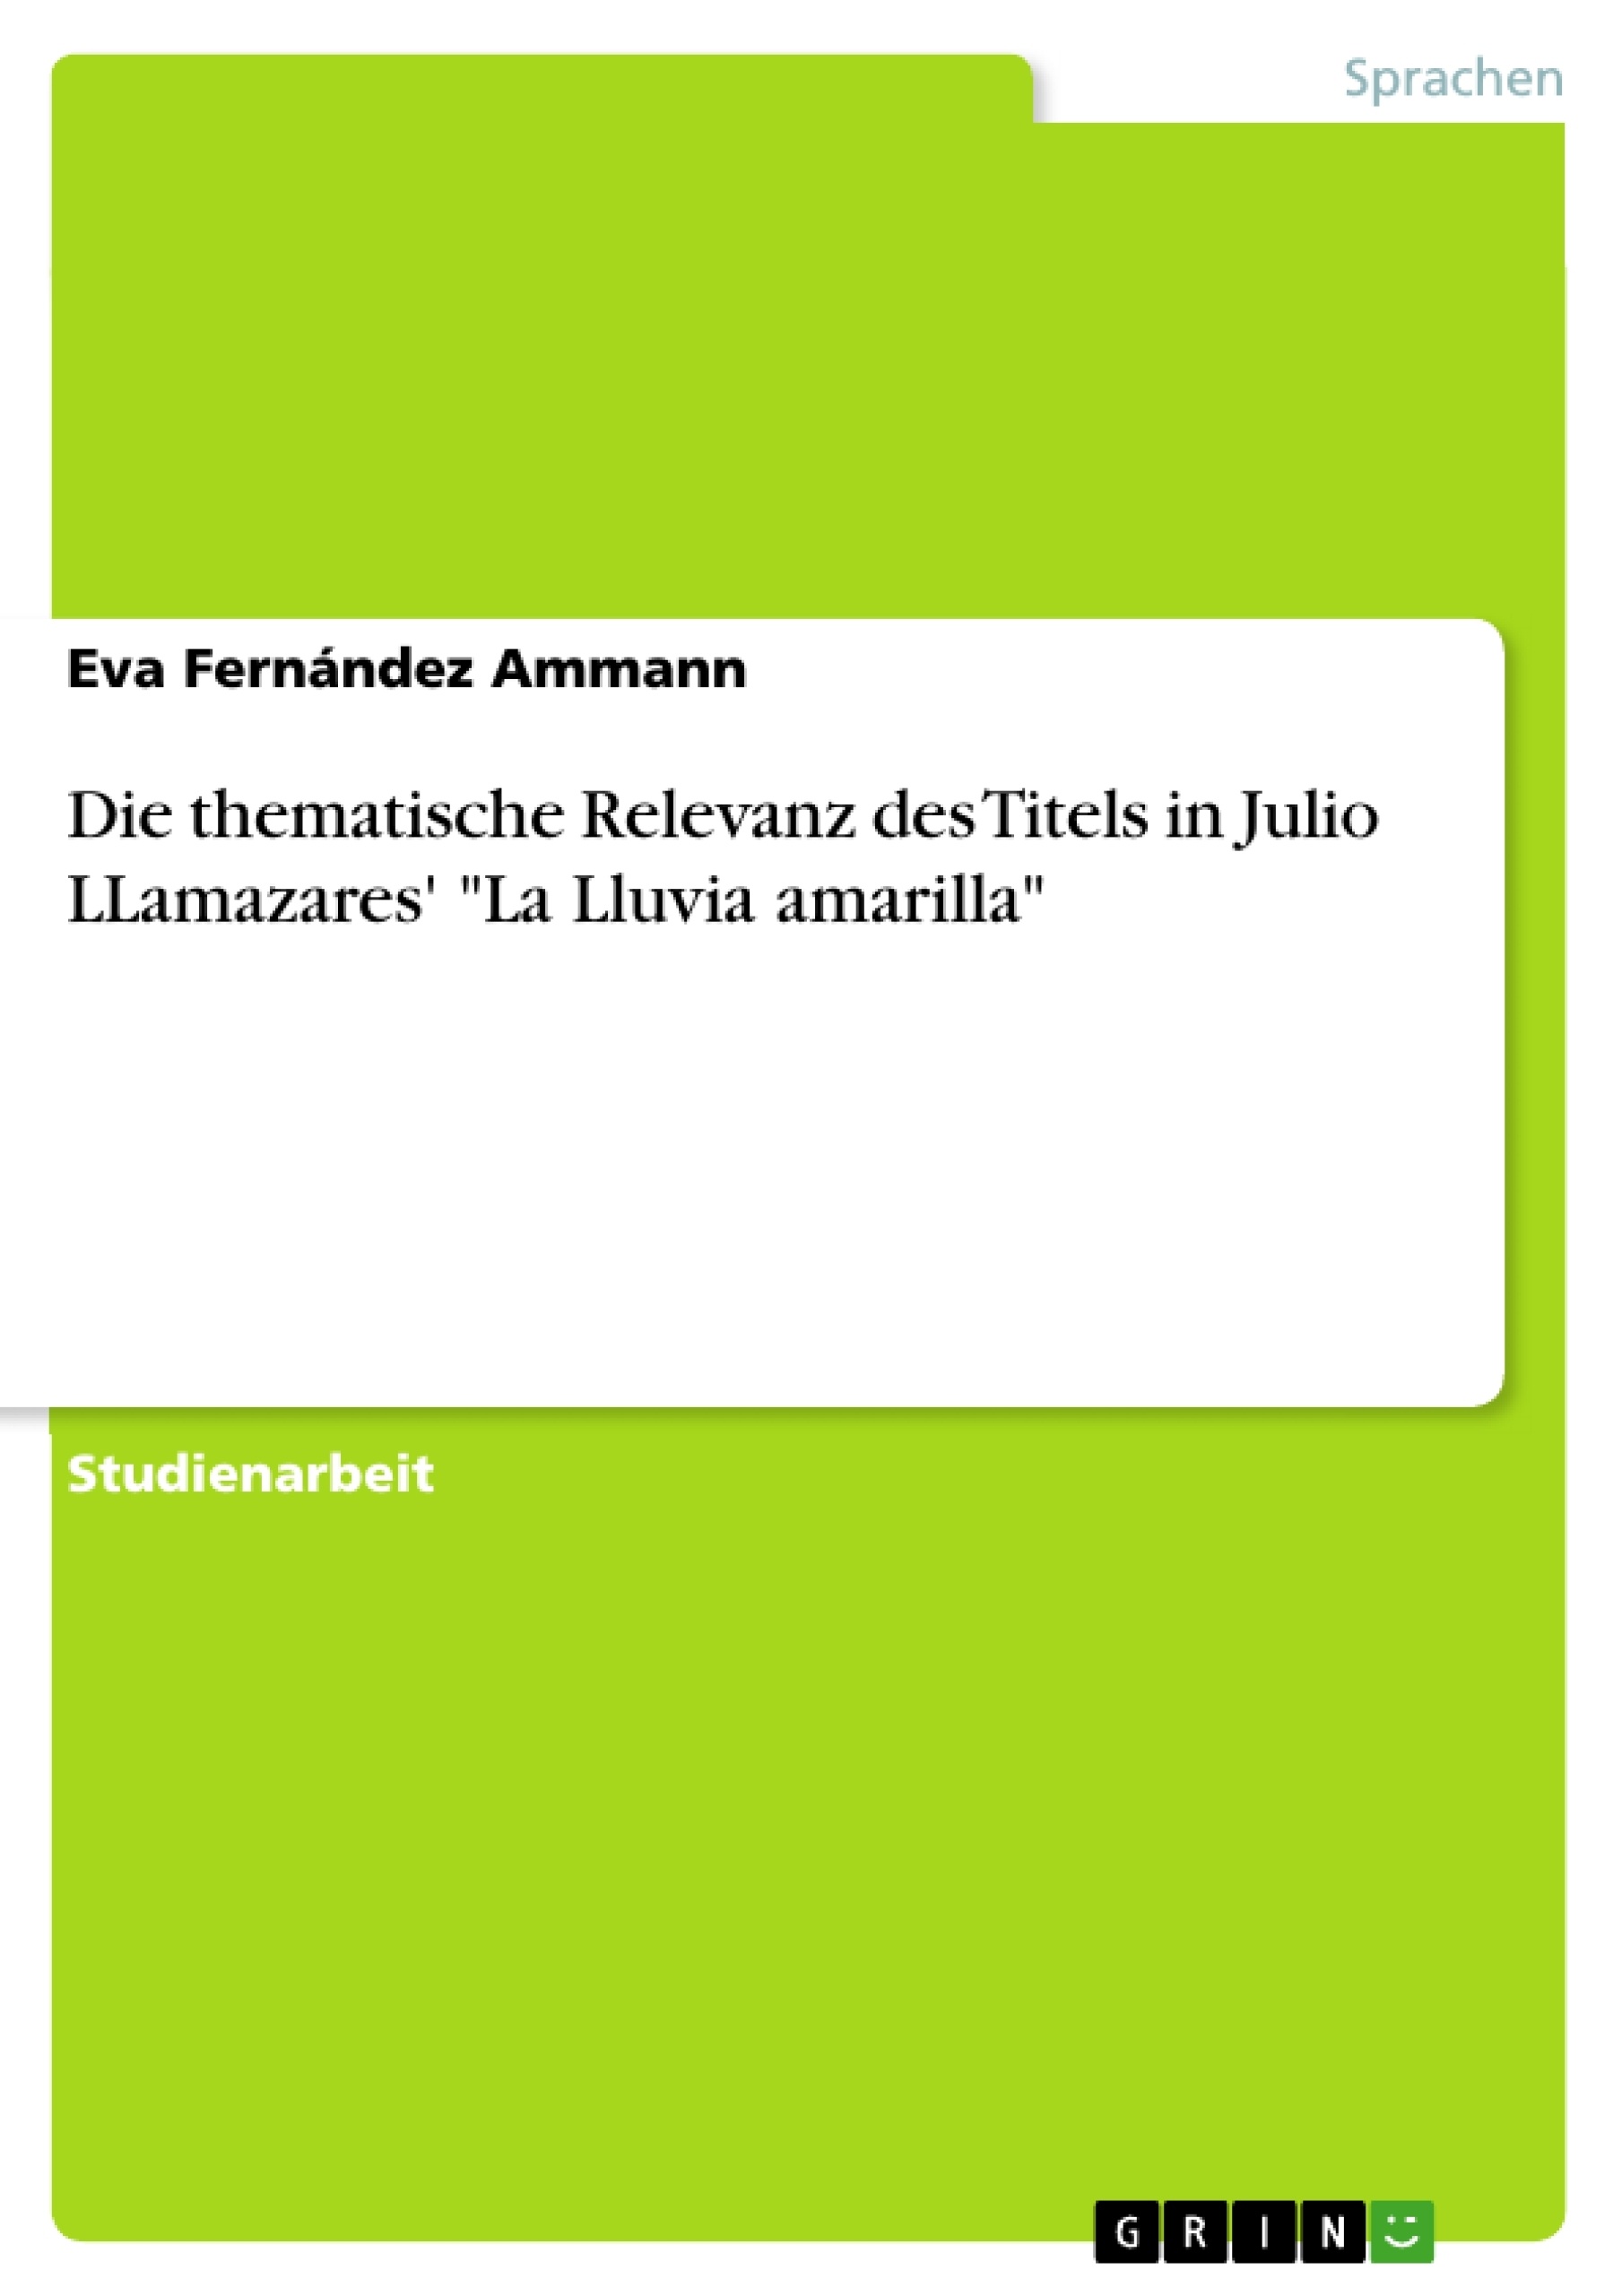 Título: Die thematische Relevanz des Titels in Julio LLamazares' "La Lluvia amarilla"